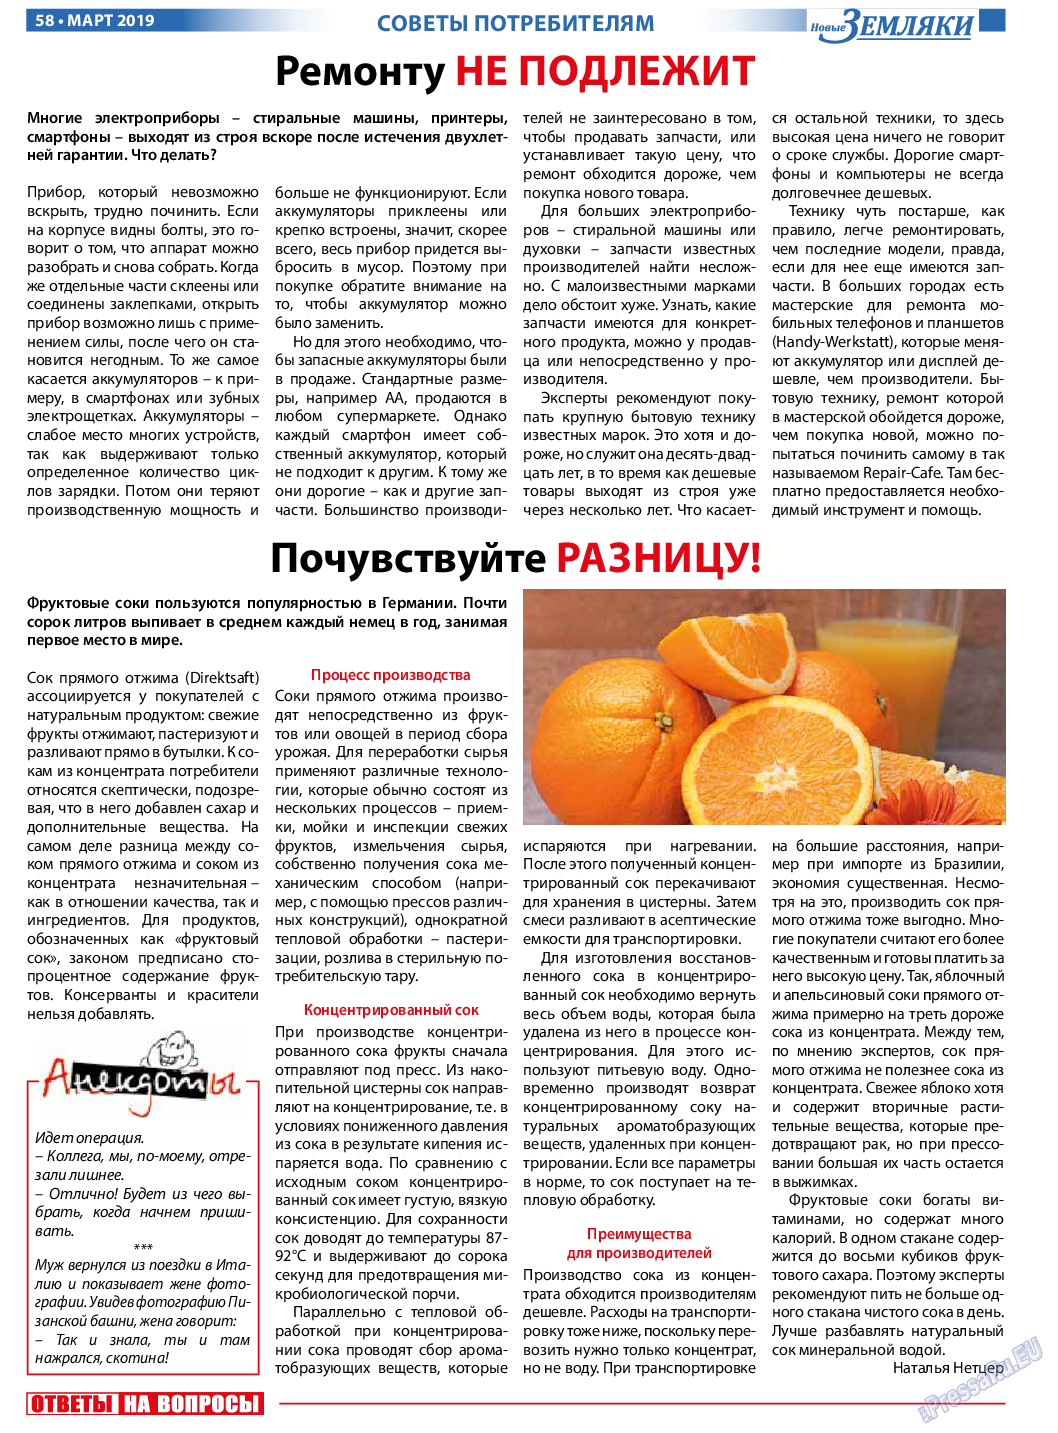 Новые Земляки (газета). 2019 год, номер 3, стр. 58